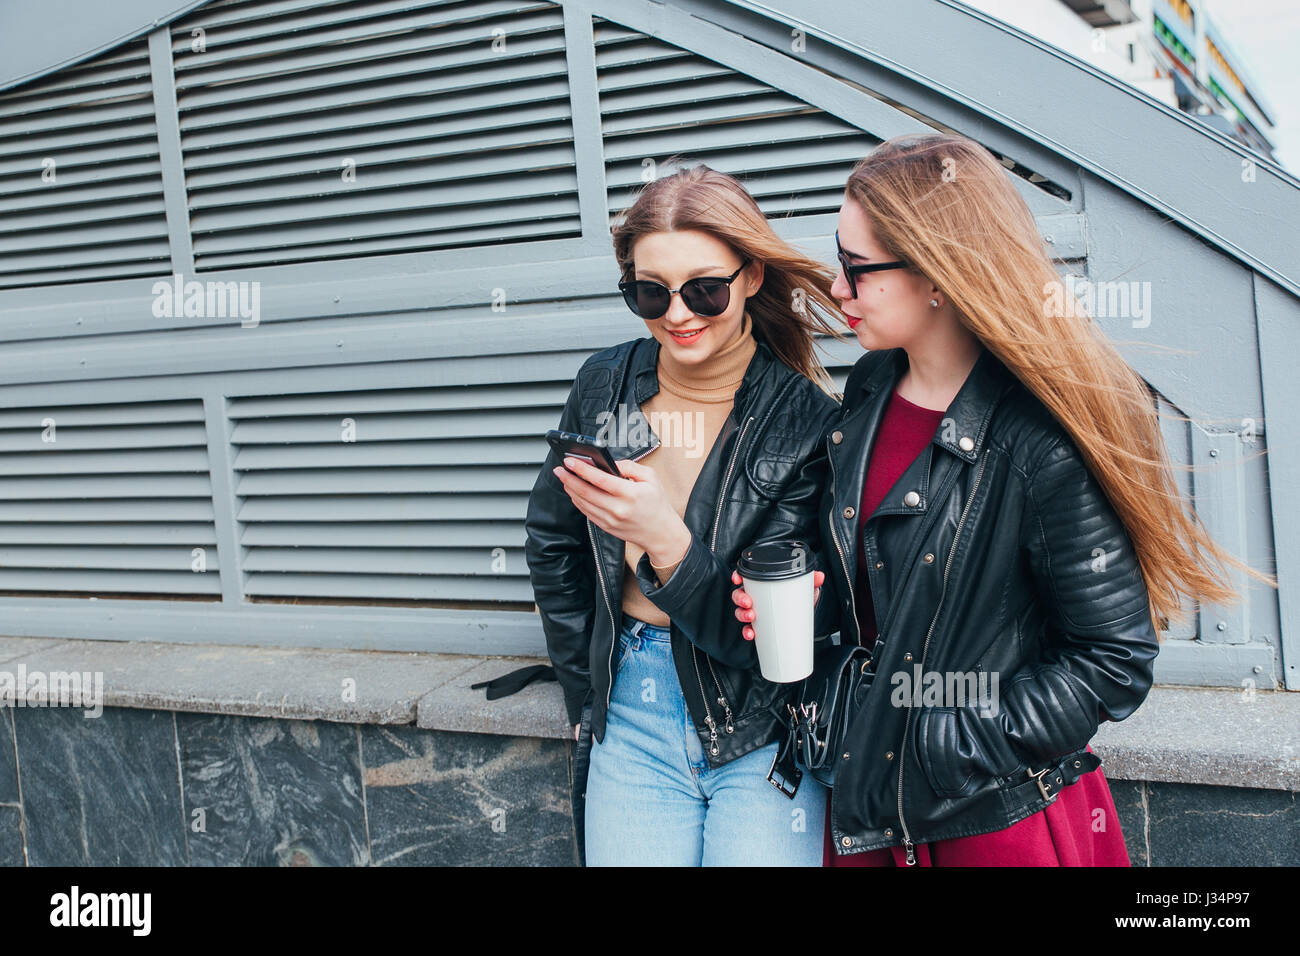 Conversazione tra due donne nella città.Outdoor Lifestyle ritratto di due migliori amici hipster ragazze indossano Elegante giacca di pelle e occhiali da sole con caffè, going crazy e avente un grande tempo insieme Foto Stock